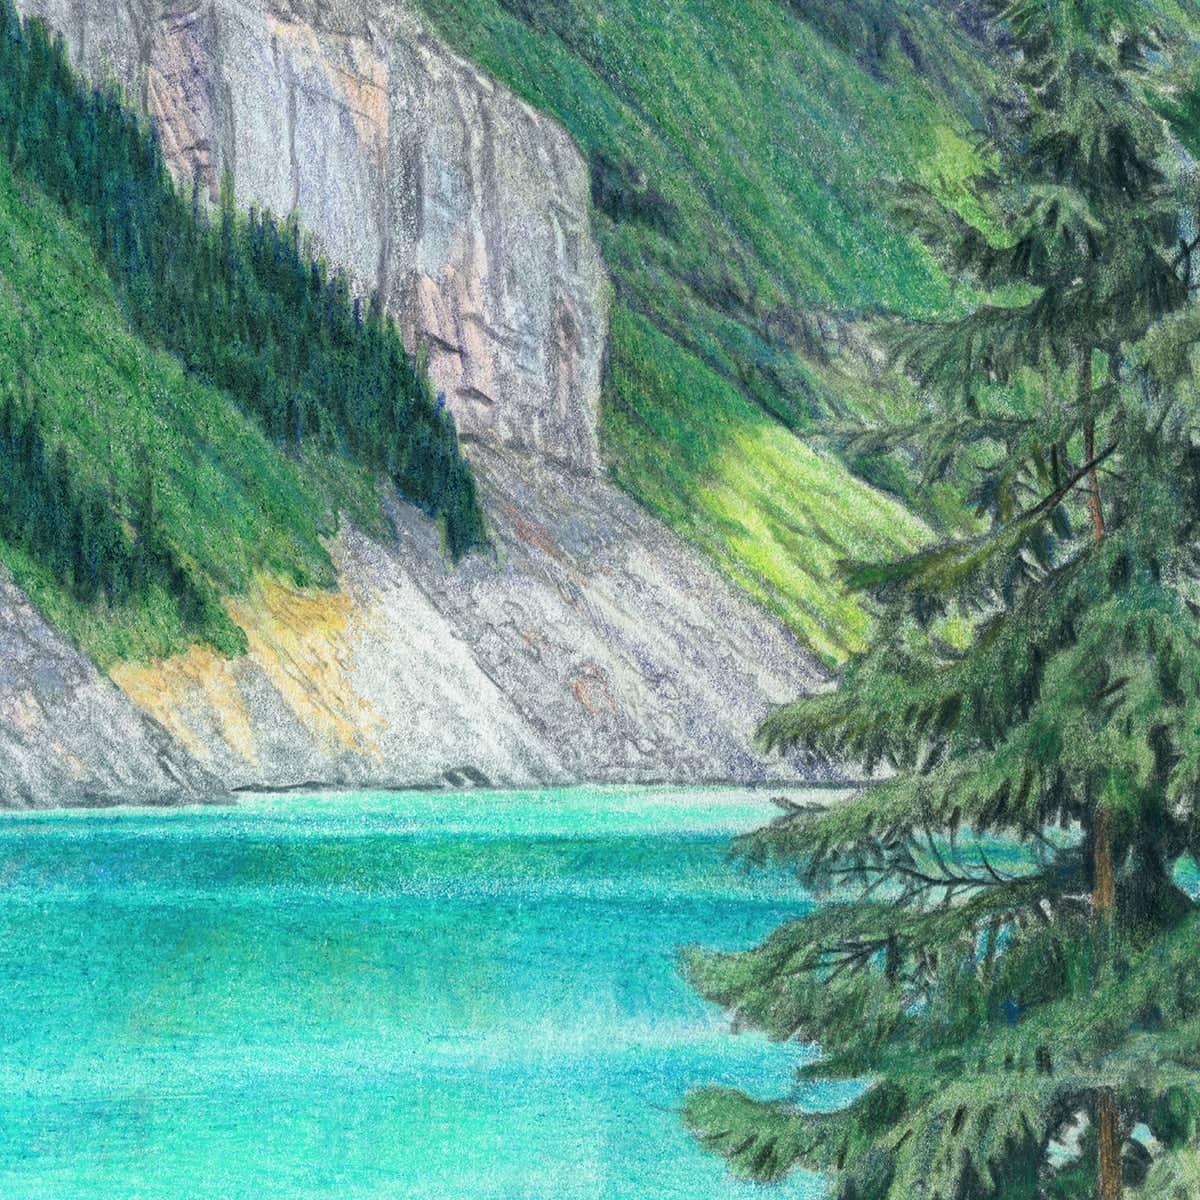 Lake Louise Alberta - Art Print | Artwork by Glen Loates